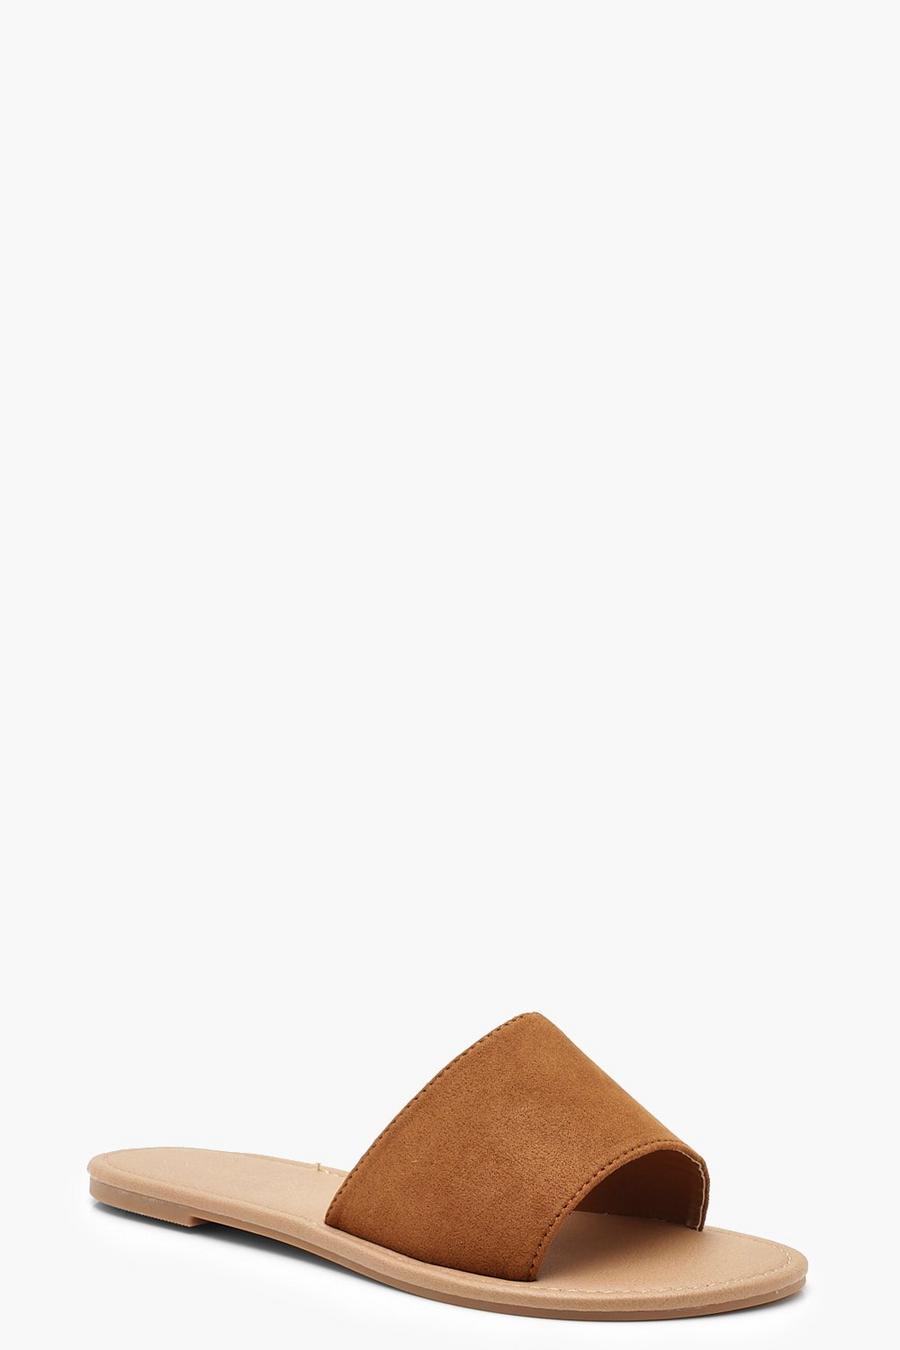 Tan brown Basic Slides